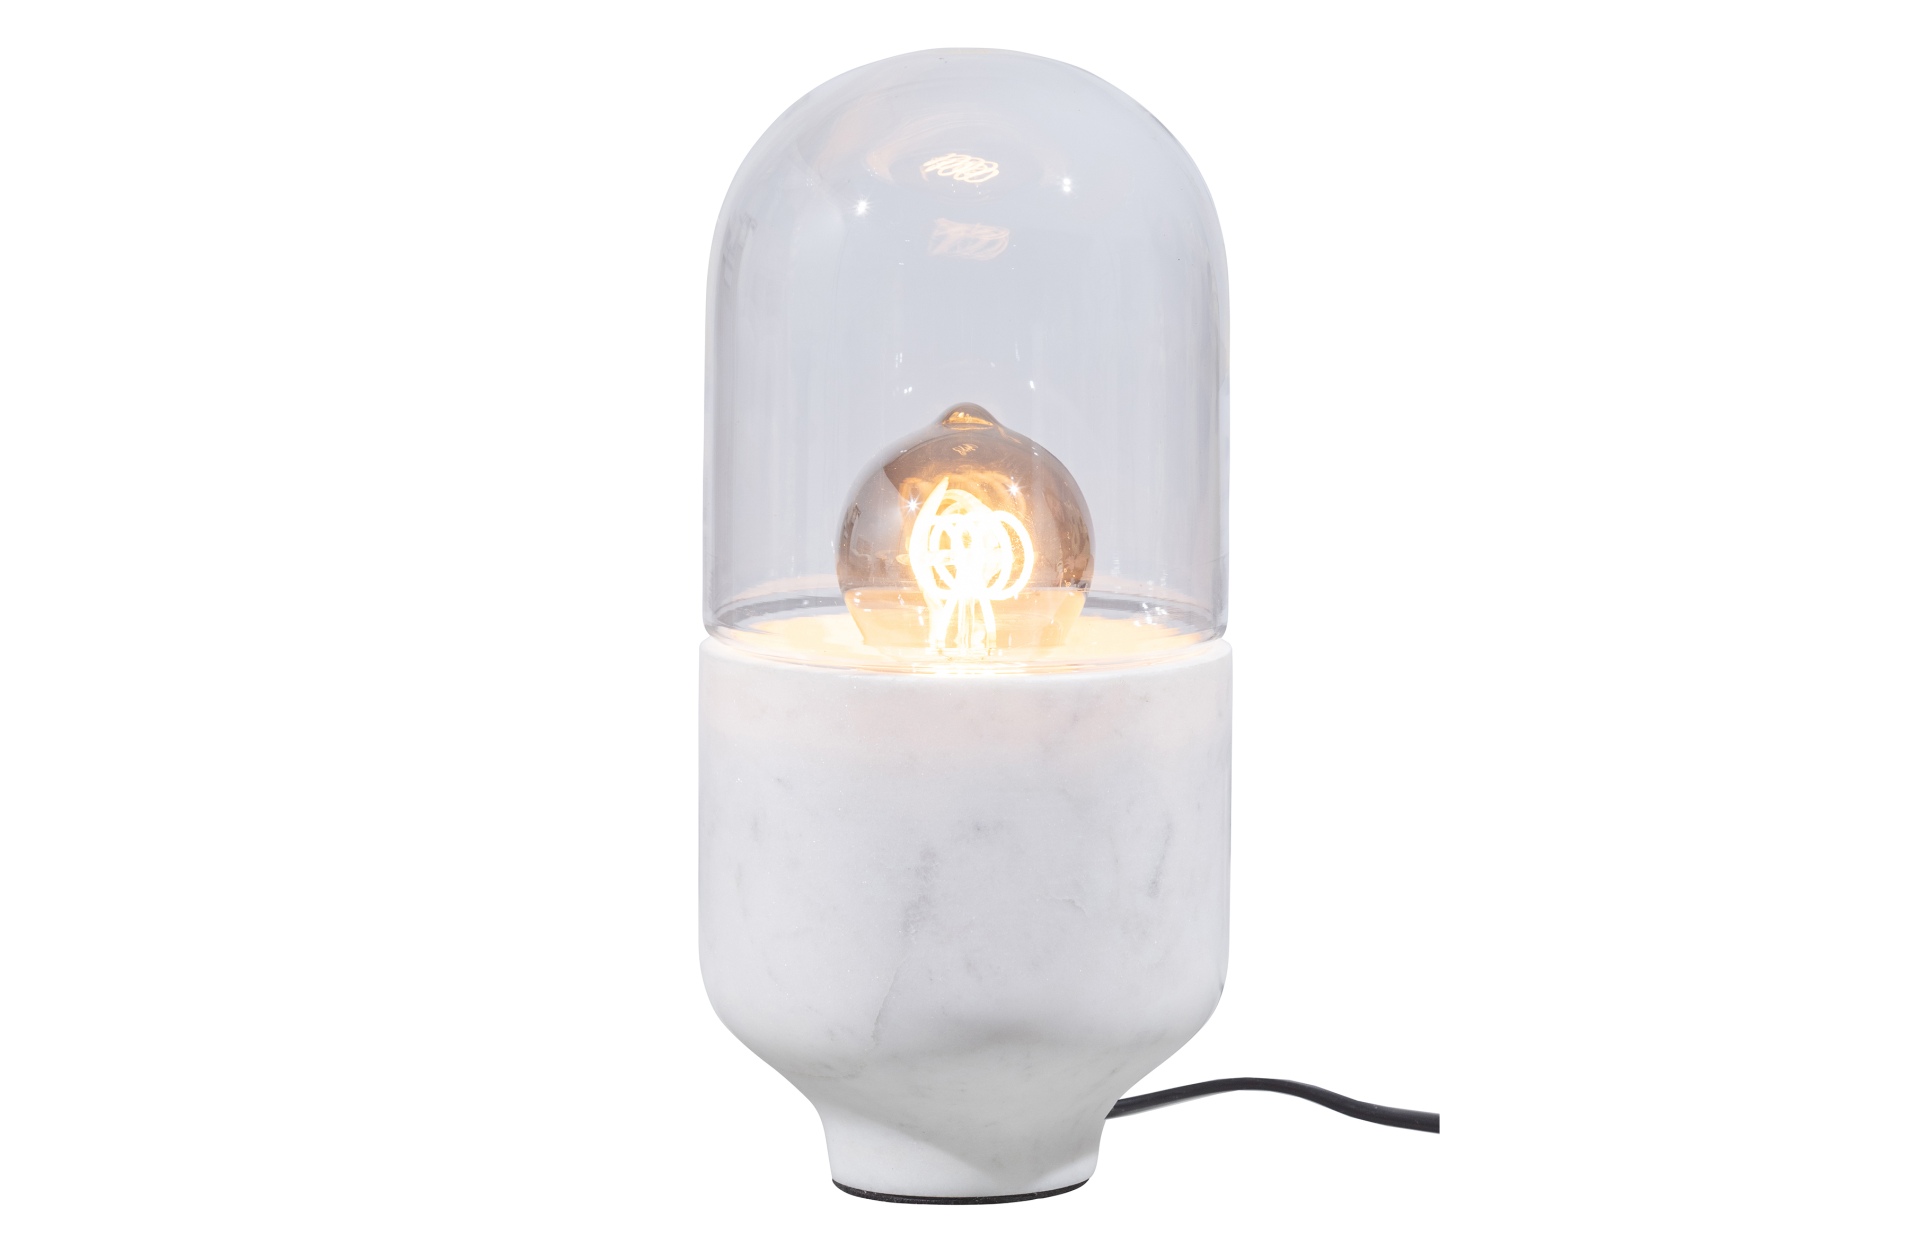 Die Tischlampe Asel überzeugt mit ihrem besonderem Design. Gefertigt wurde die Lampe aus Glas in Marmoroptik, welches einen weißen Farbton besitzt.